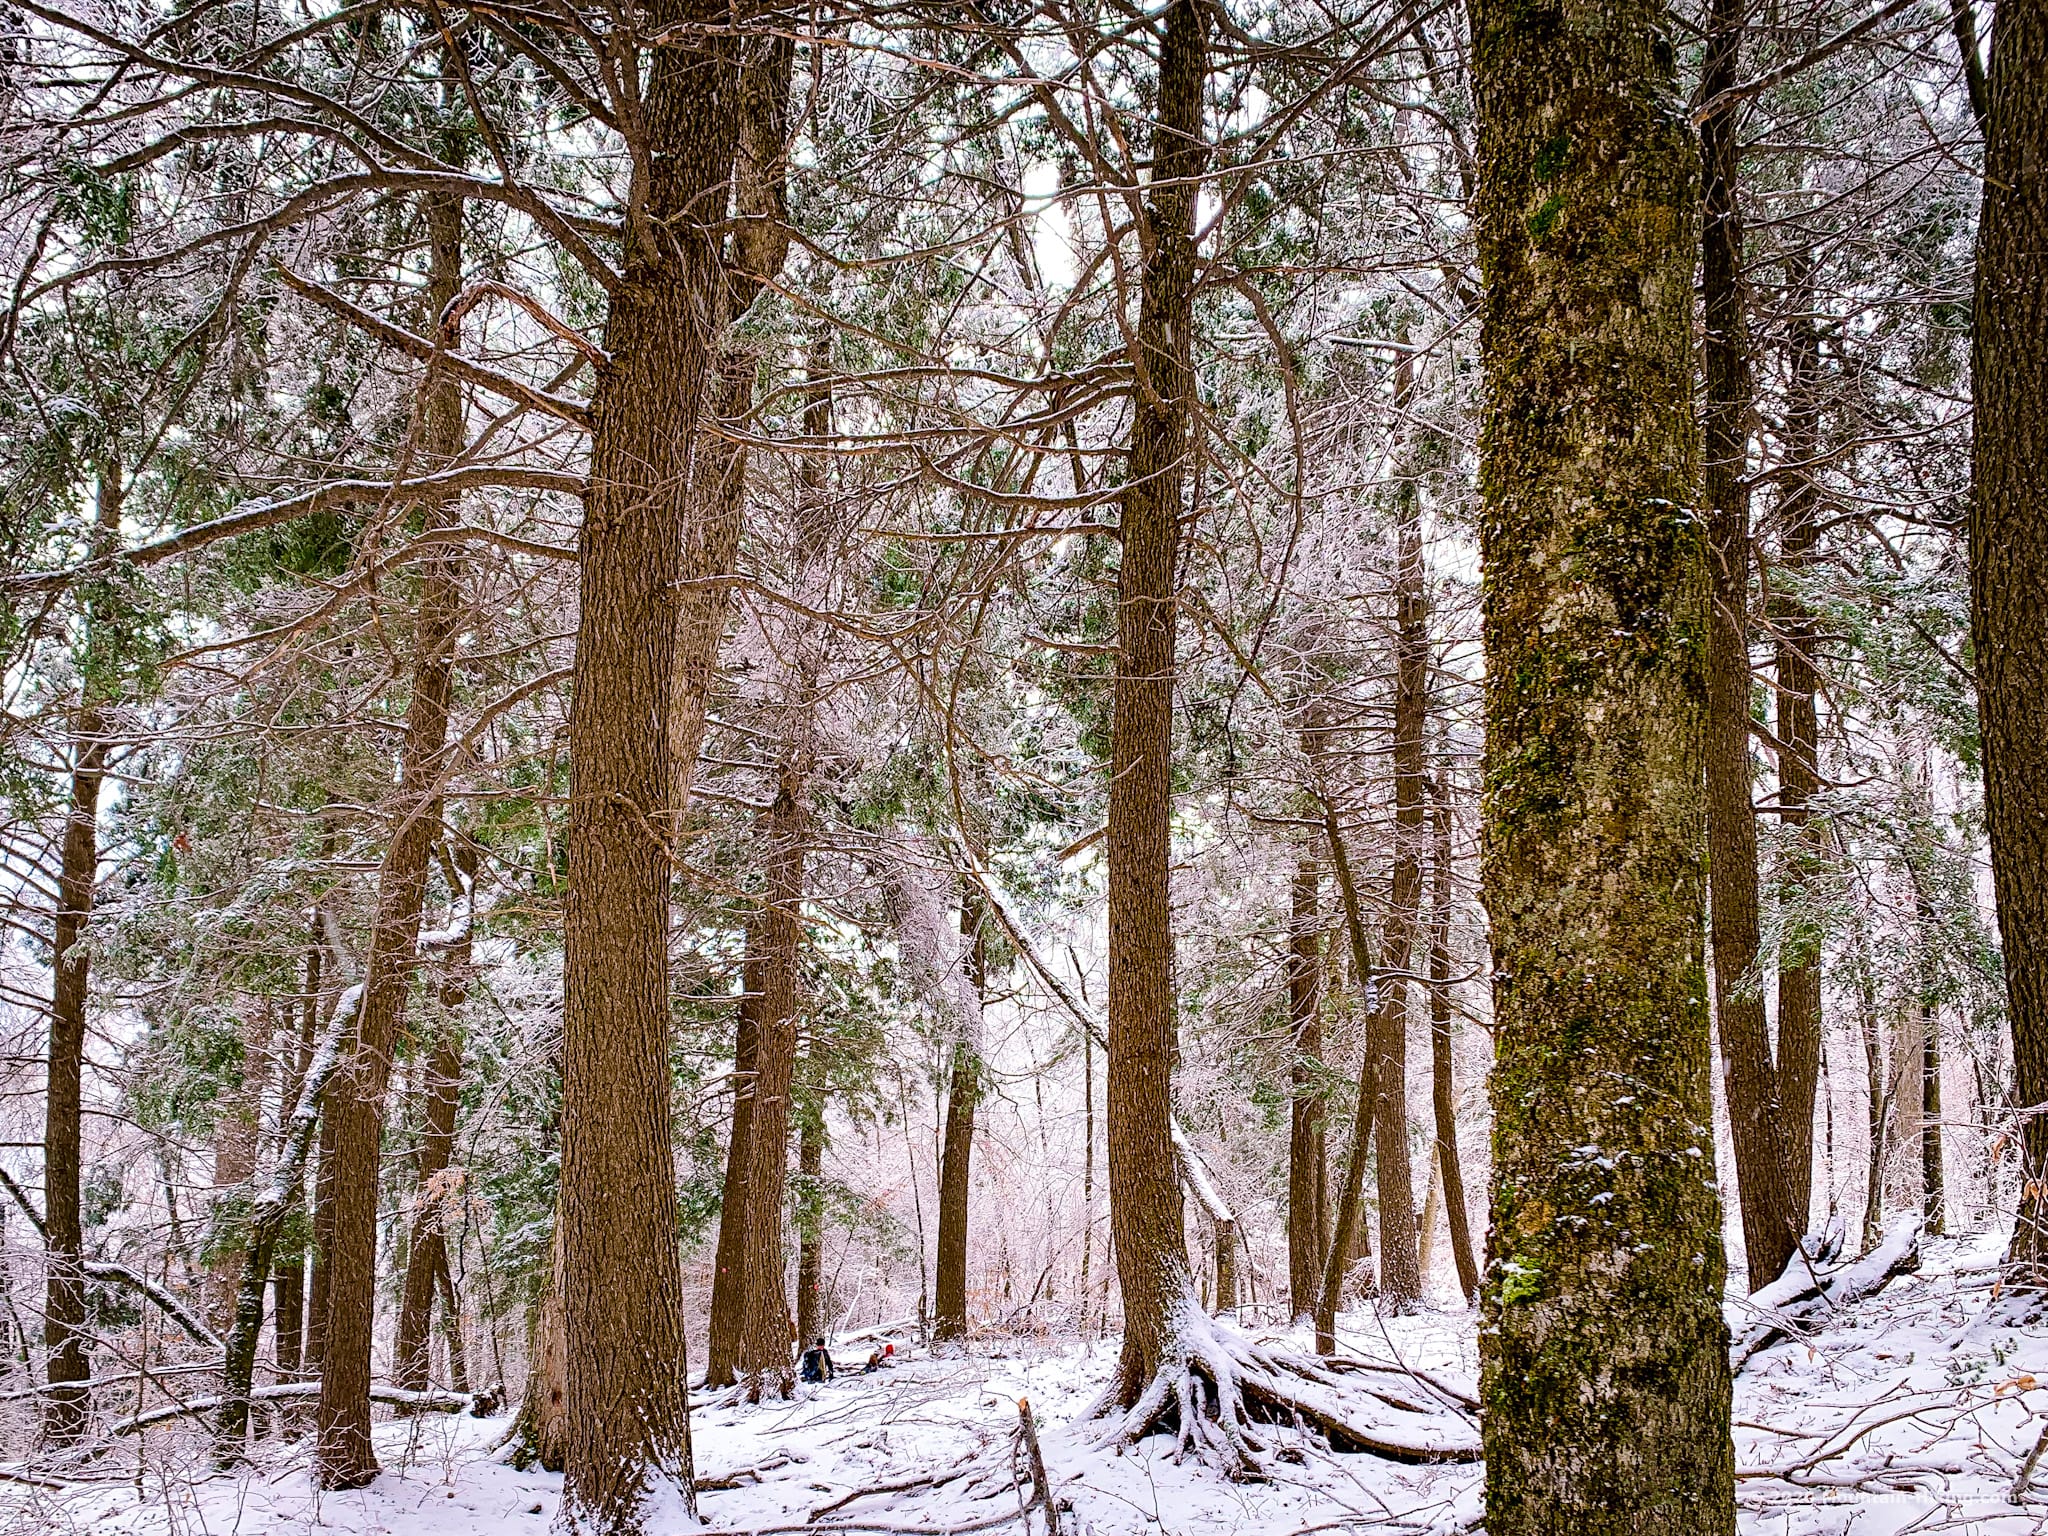 Hiking trail, Wittenberg, Catskills